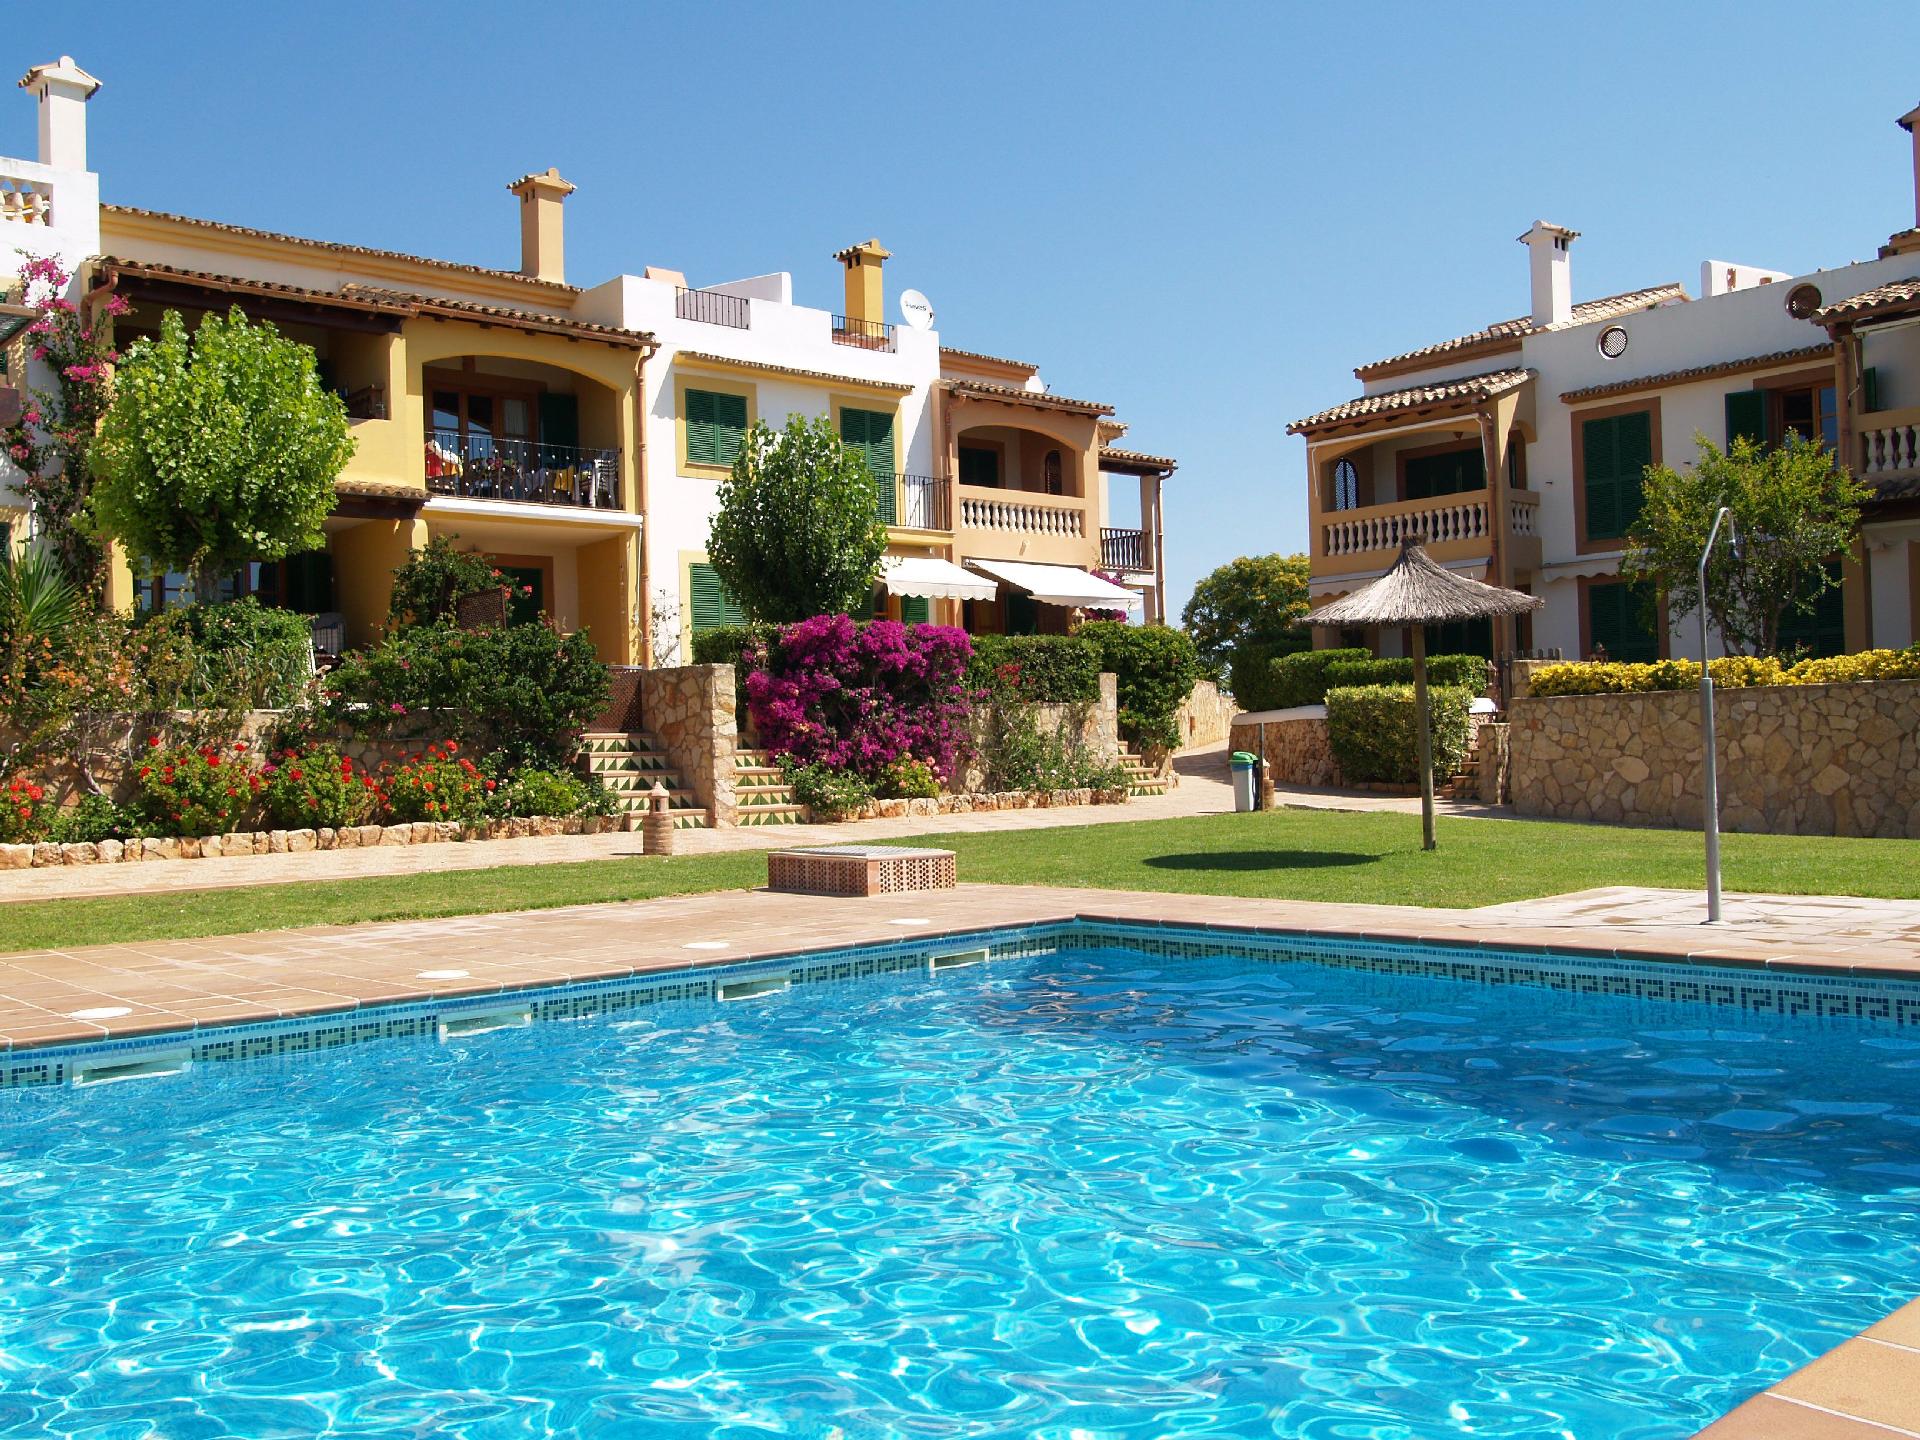 Ferienwohnung für 2 Personen ca. 45 m² i Ferienwohnung in Spanien